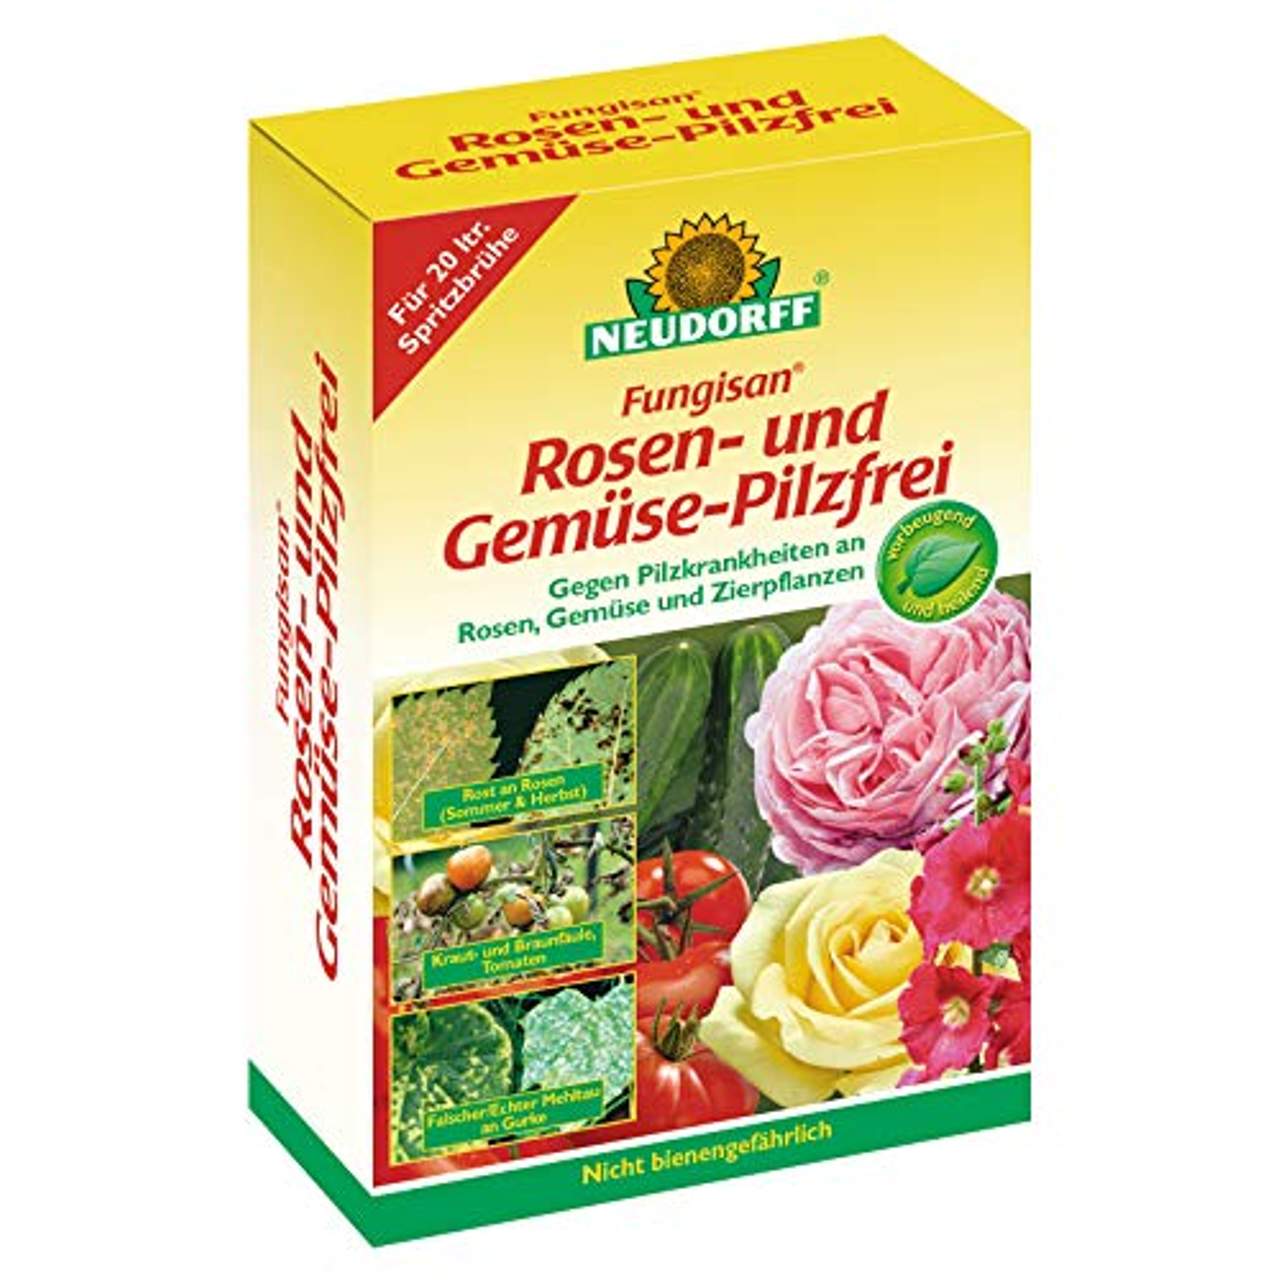 Rosen- und Gemüse Pilzfrei Fungisan